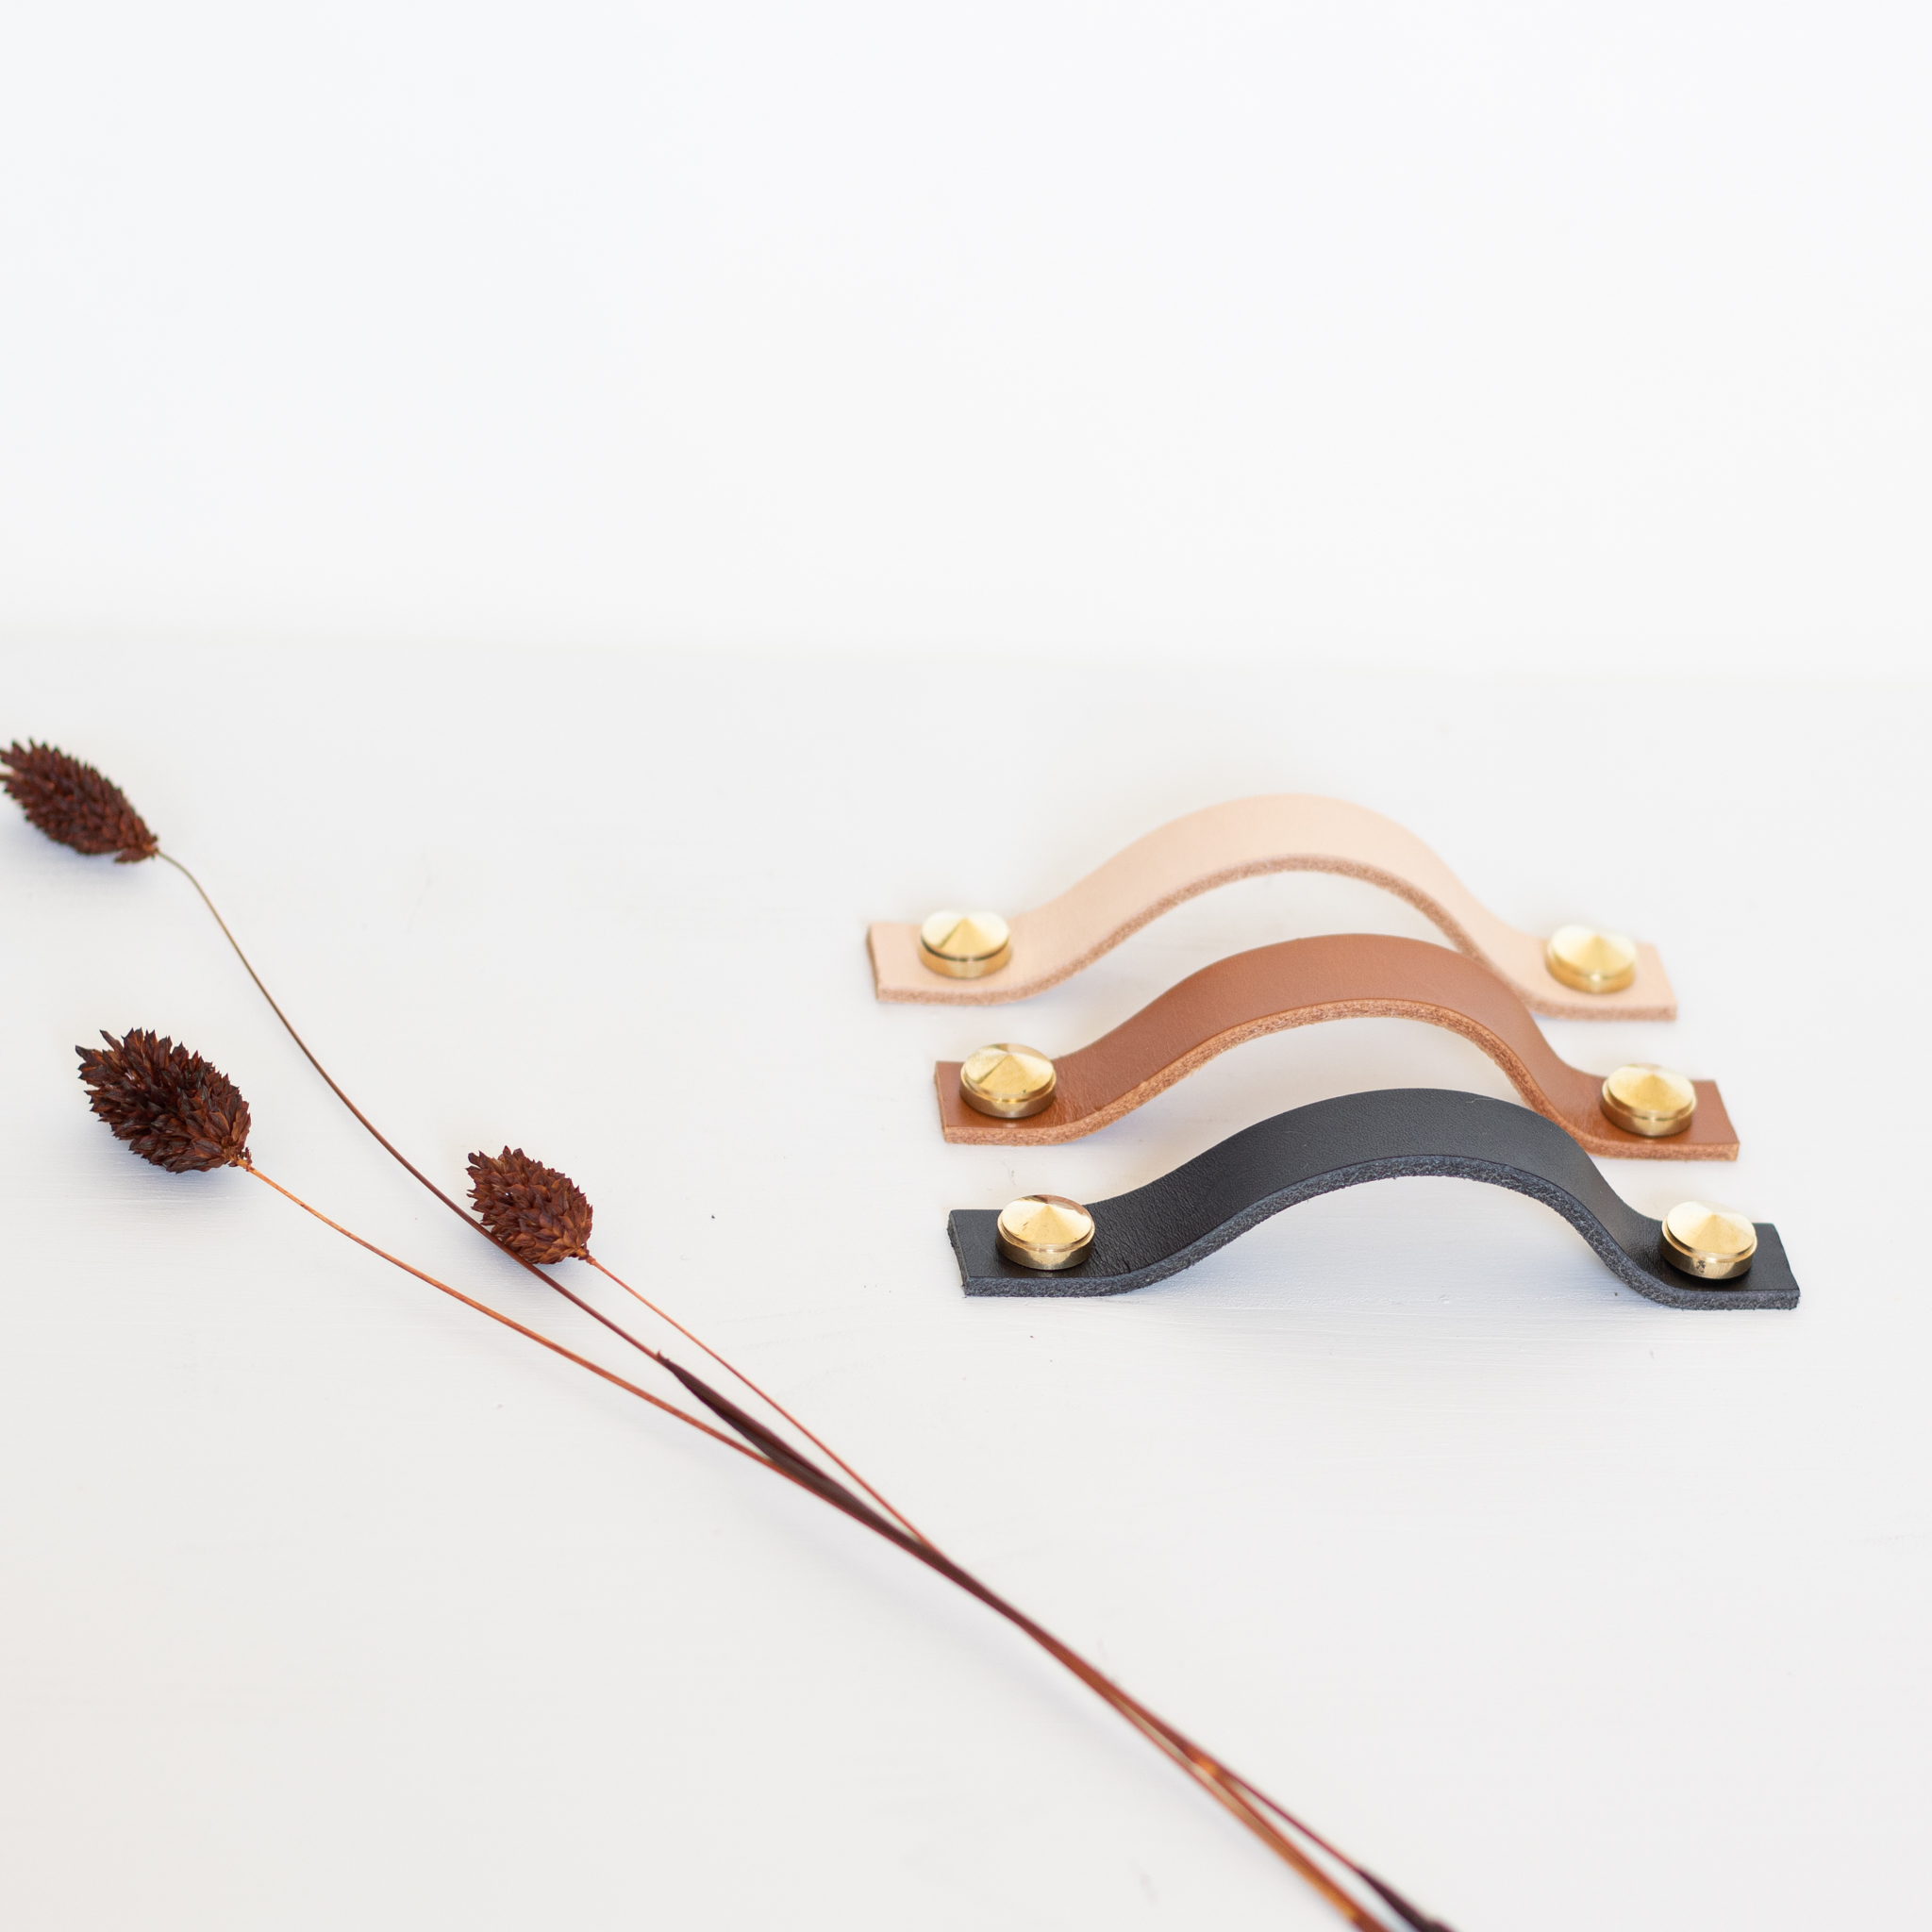 Poignée horizontale en cuir et laiton pour meuble, confectionné par Trendy Little